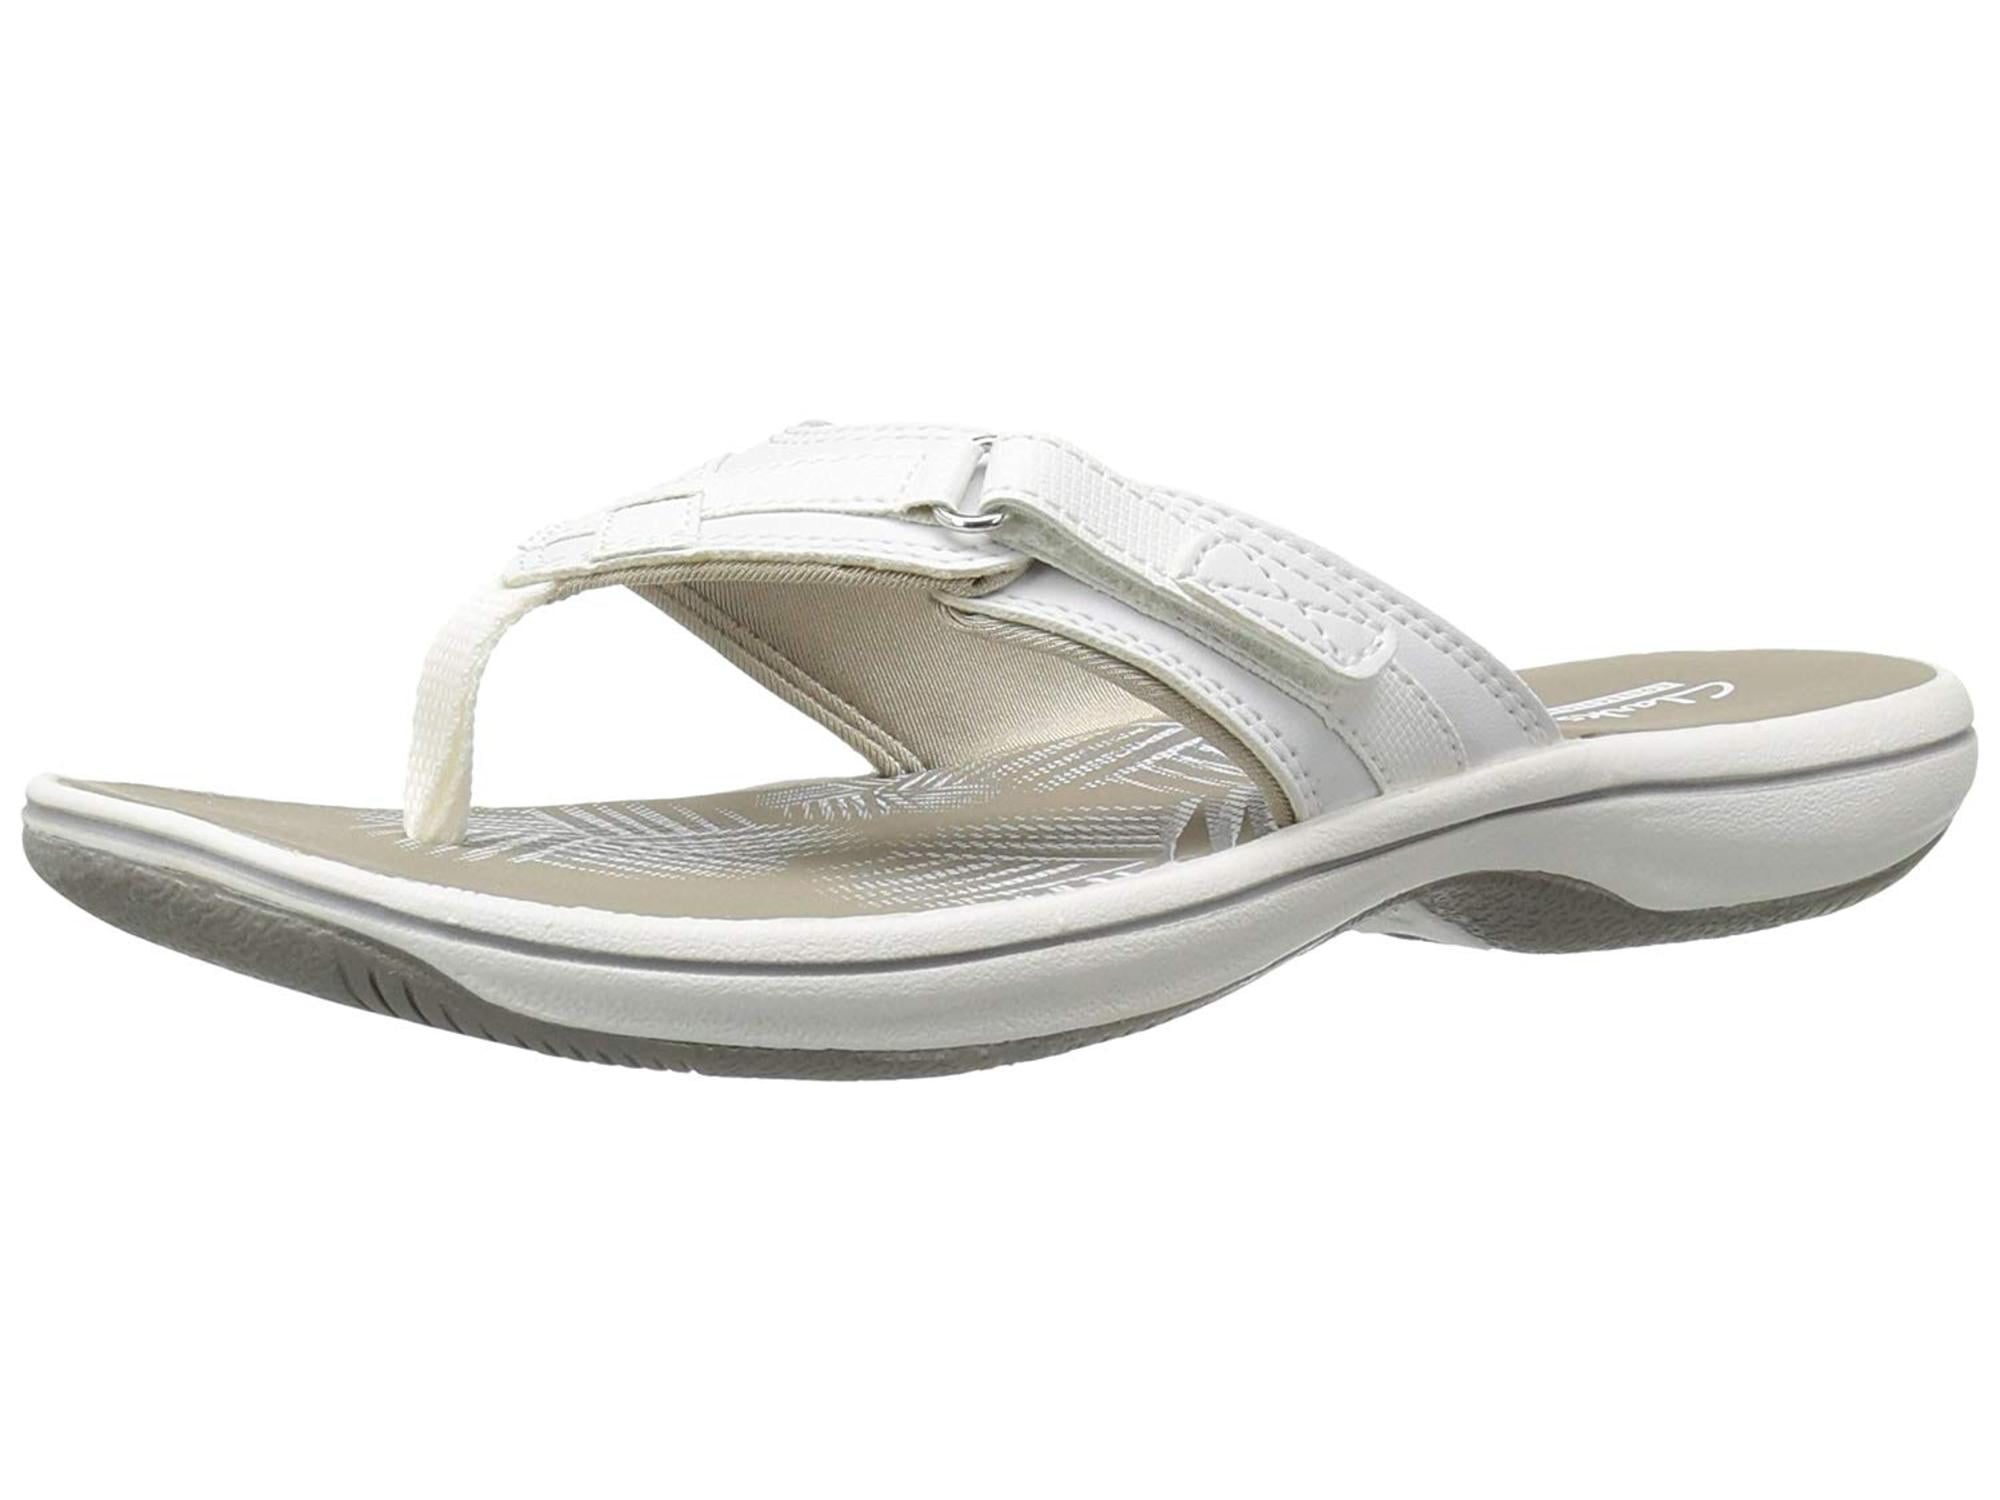 buy clarks sandals online canada